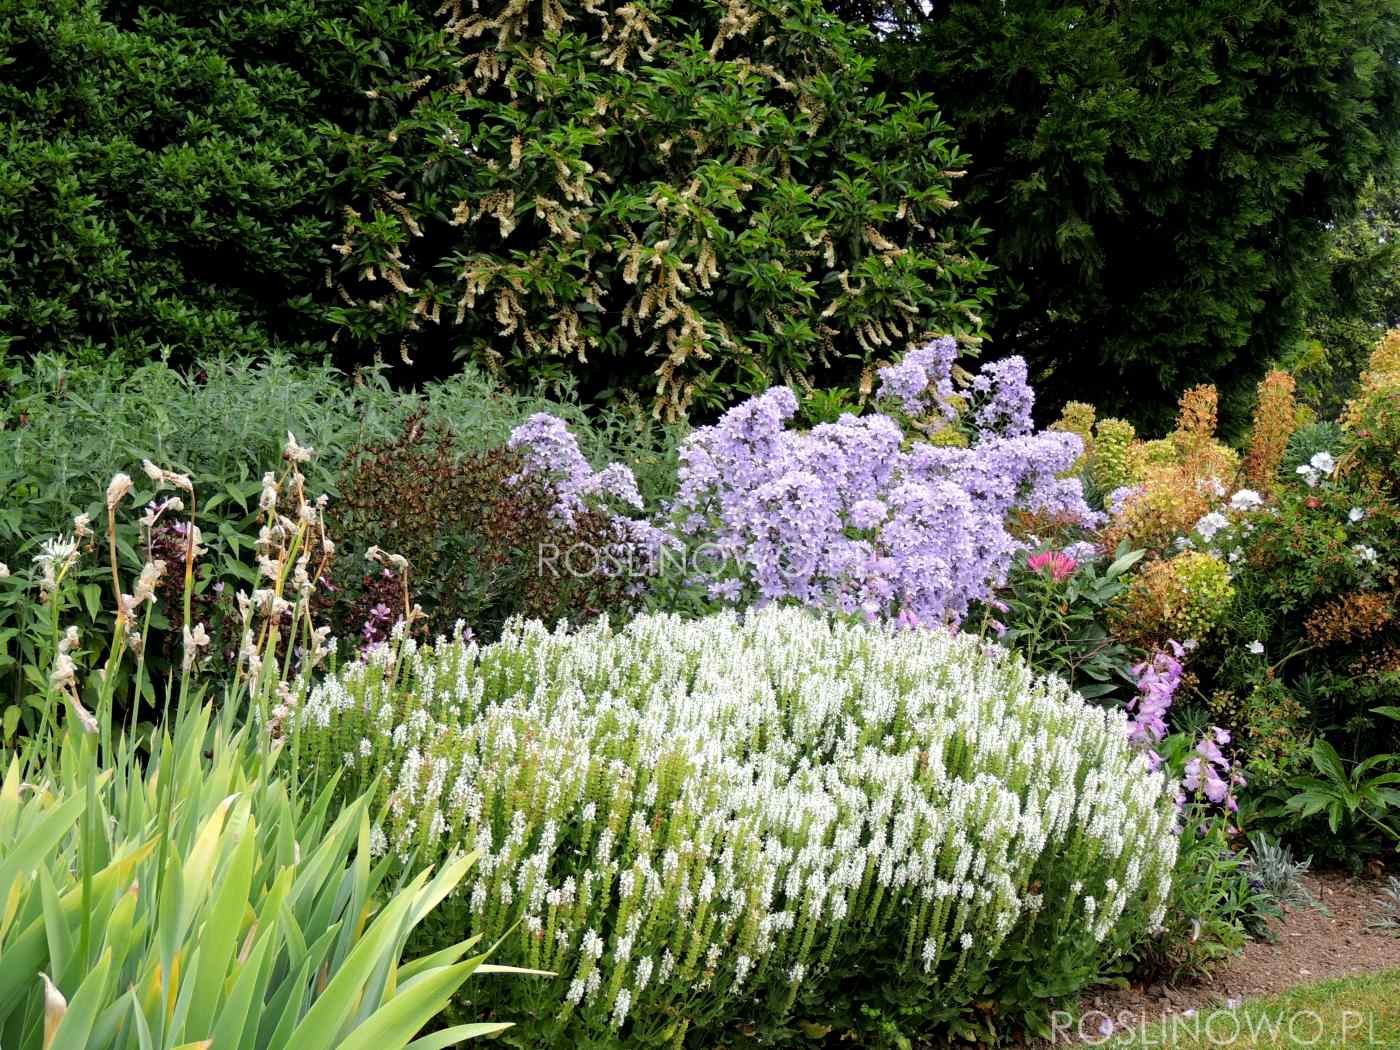 szałwia salute white - bylina ogrodowa o miododajnych kwiatach i kępiastym pokroju